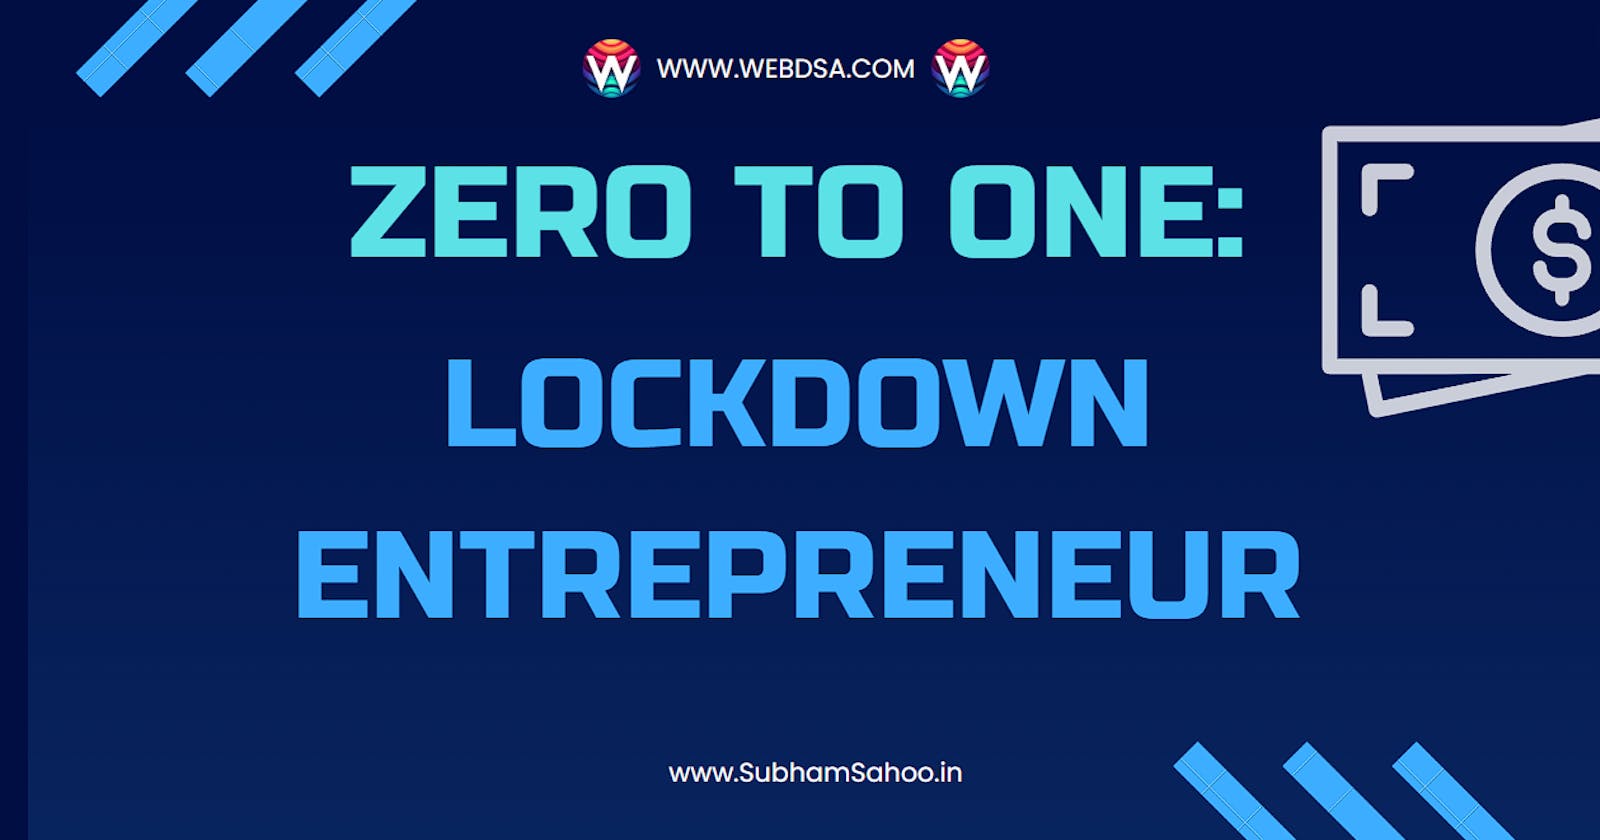 ZERO to ONE: Lockdown Entrepreneur to NITian & Coder!